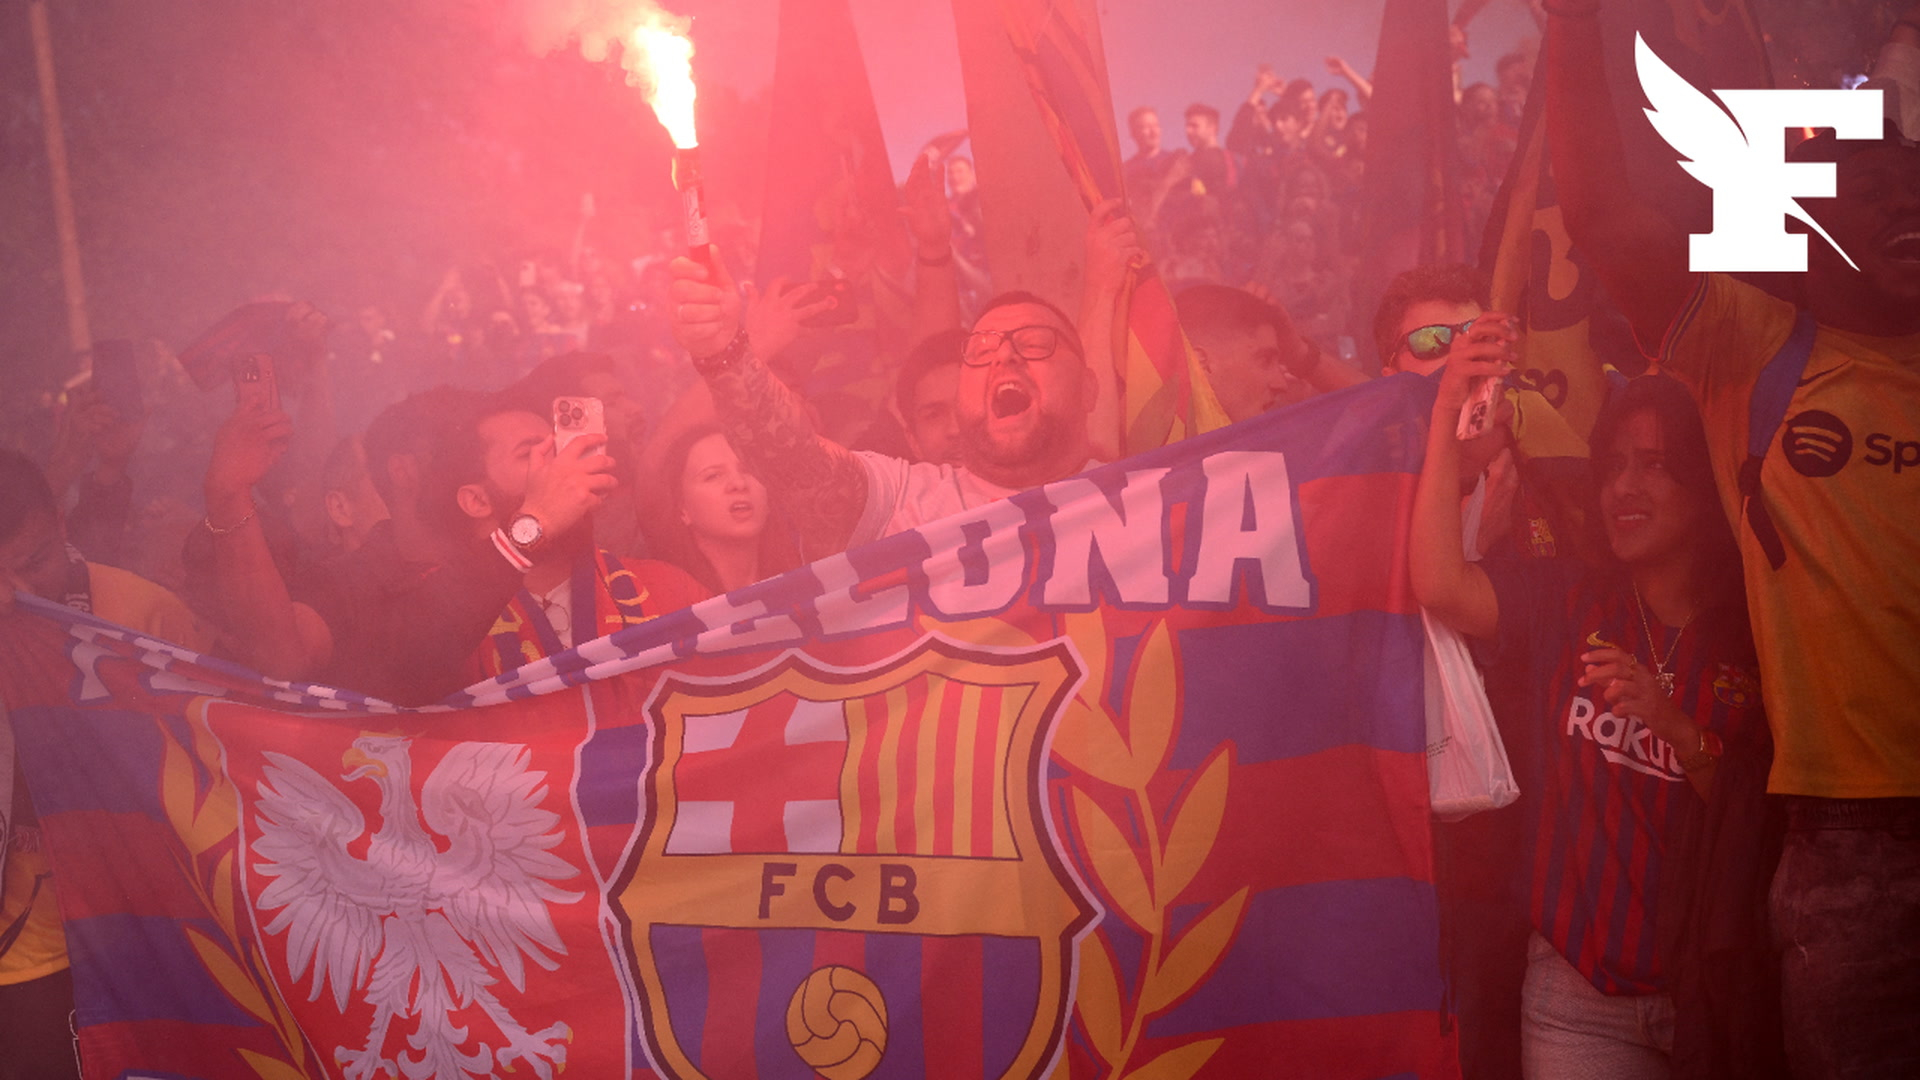 «On s’est fait attraper les seins, le pubis, tout»: des supportrices dénoncent des agressions sexuelles lors du match Barça-PSG